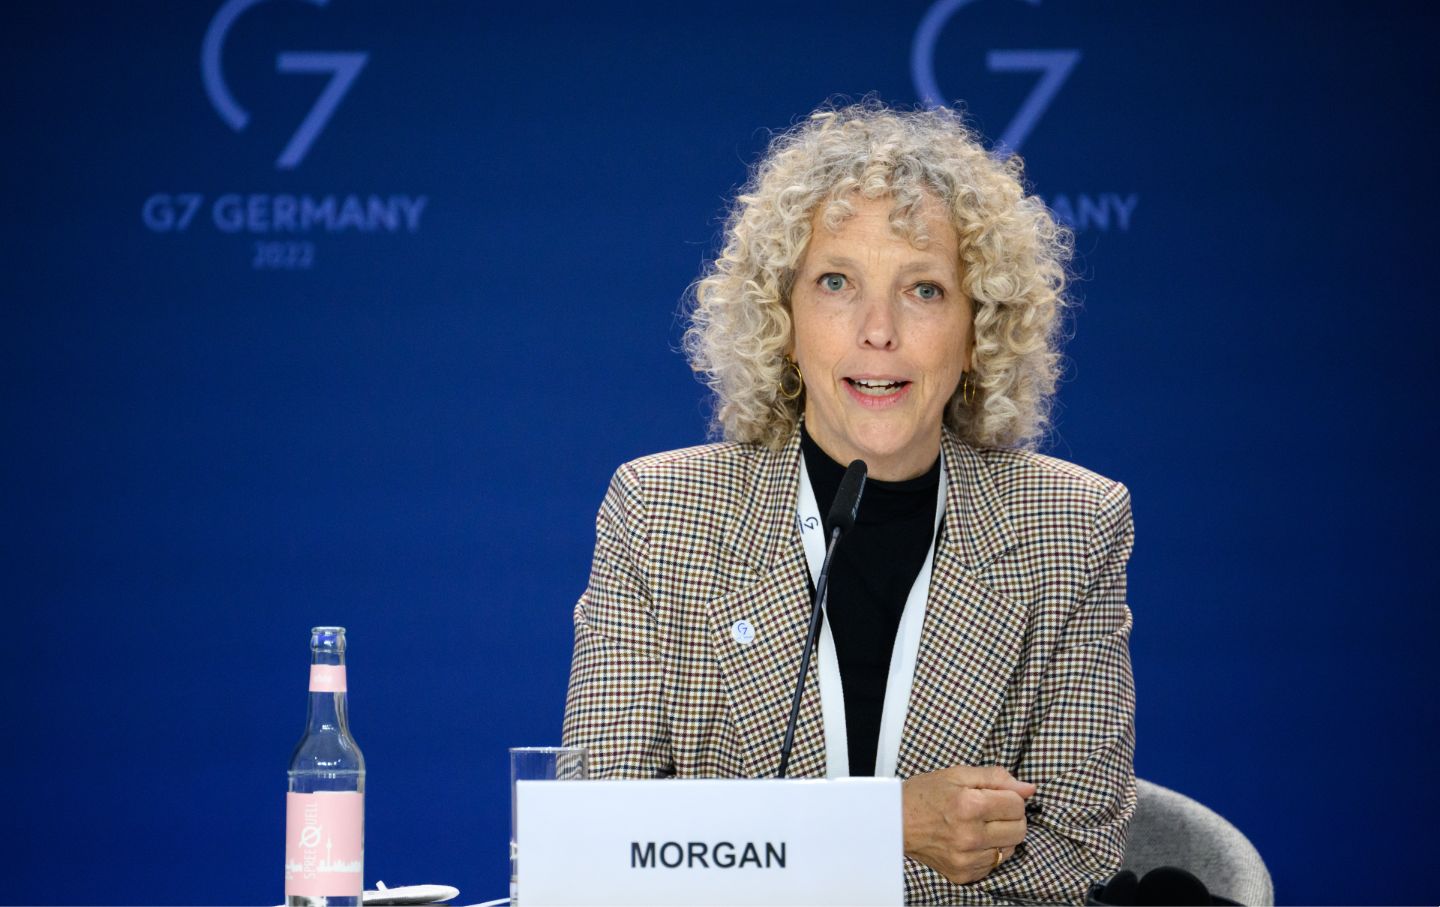 Nach dem G7-Gipfel sagte der deutsche Klimabeauftragte, dass die reichen Länder immer noch versagen